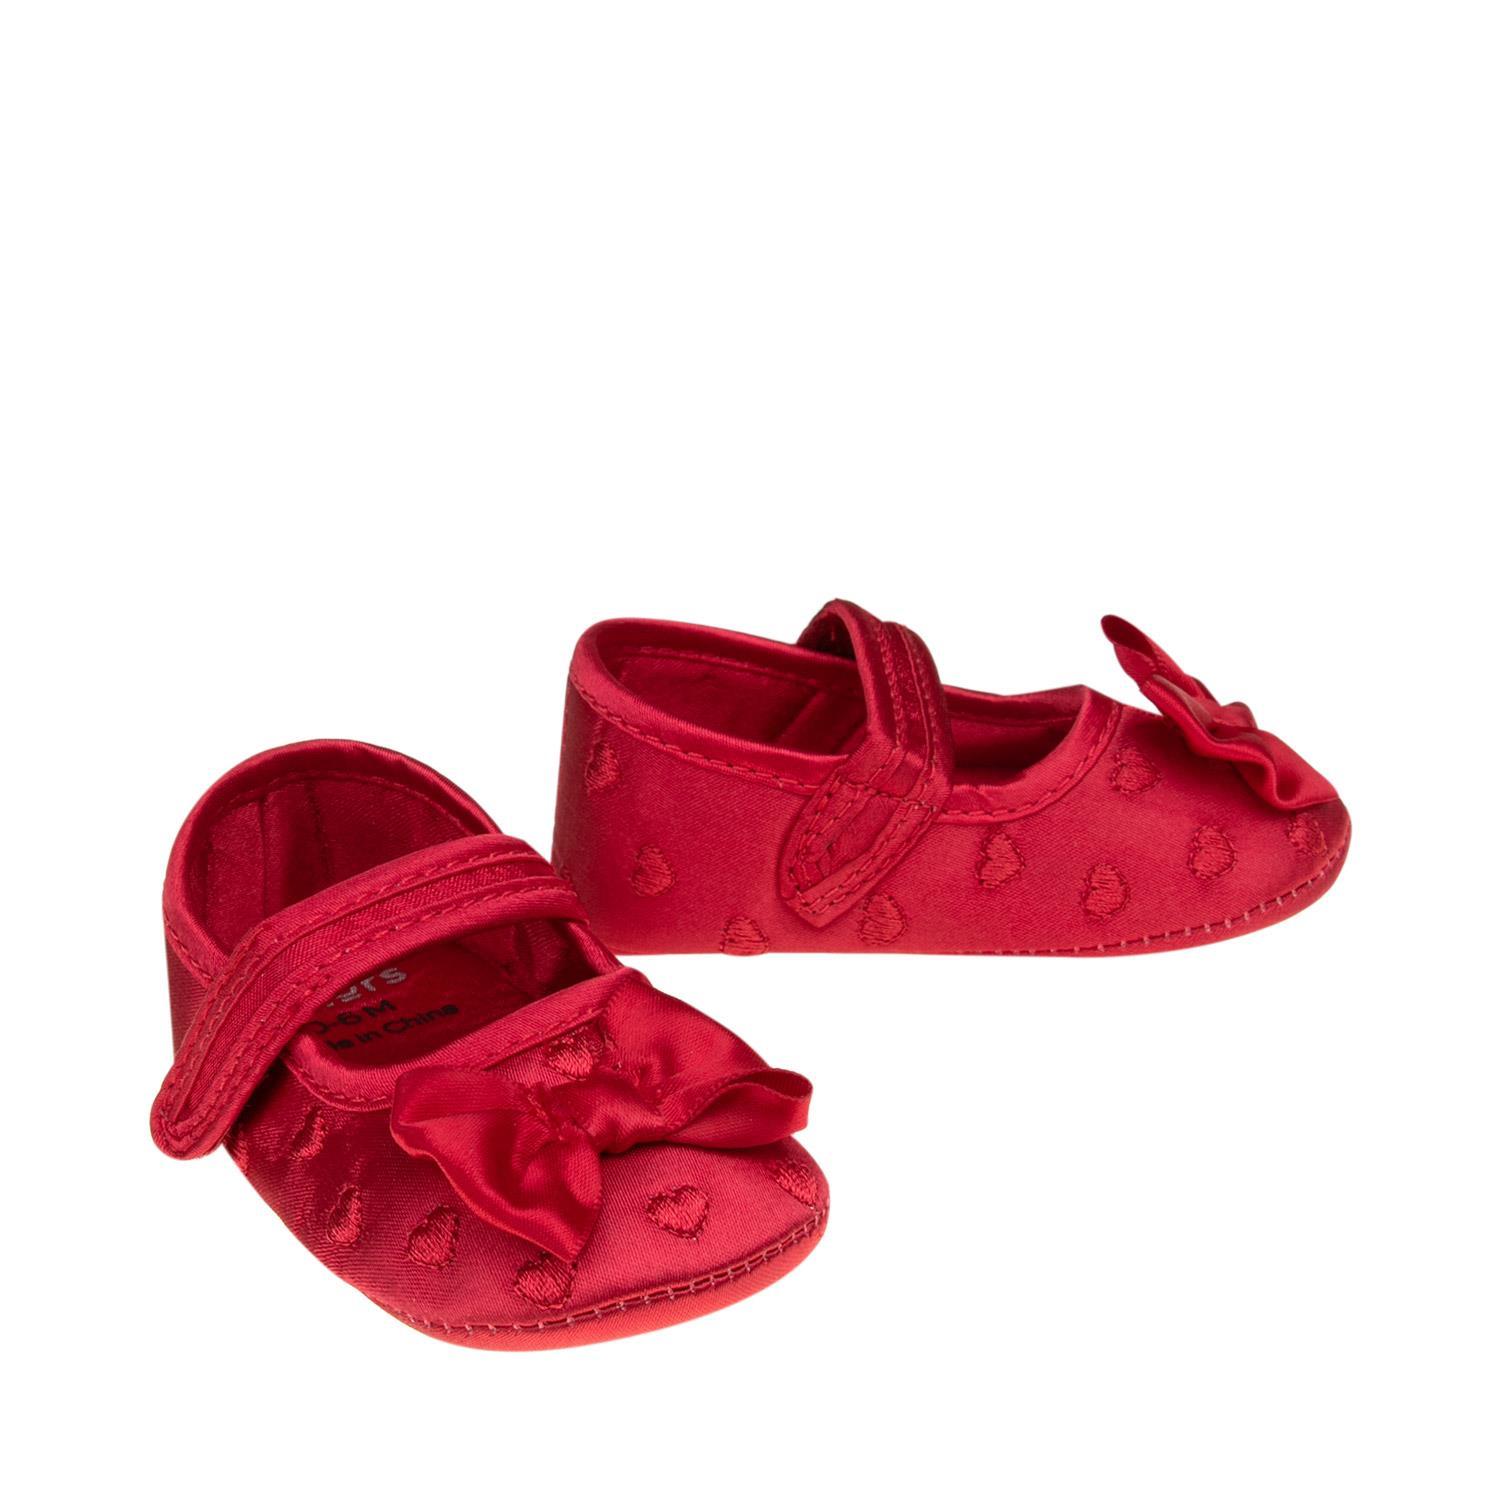 ROBO รองเท้าเด็ก รุ่น BJ0057J17 สีแดง ไซส์ 0-6 เดือน